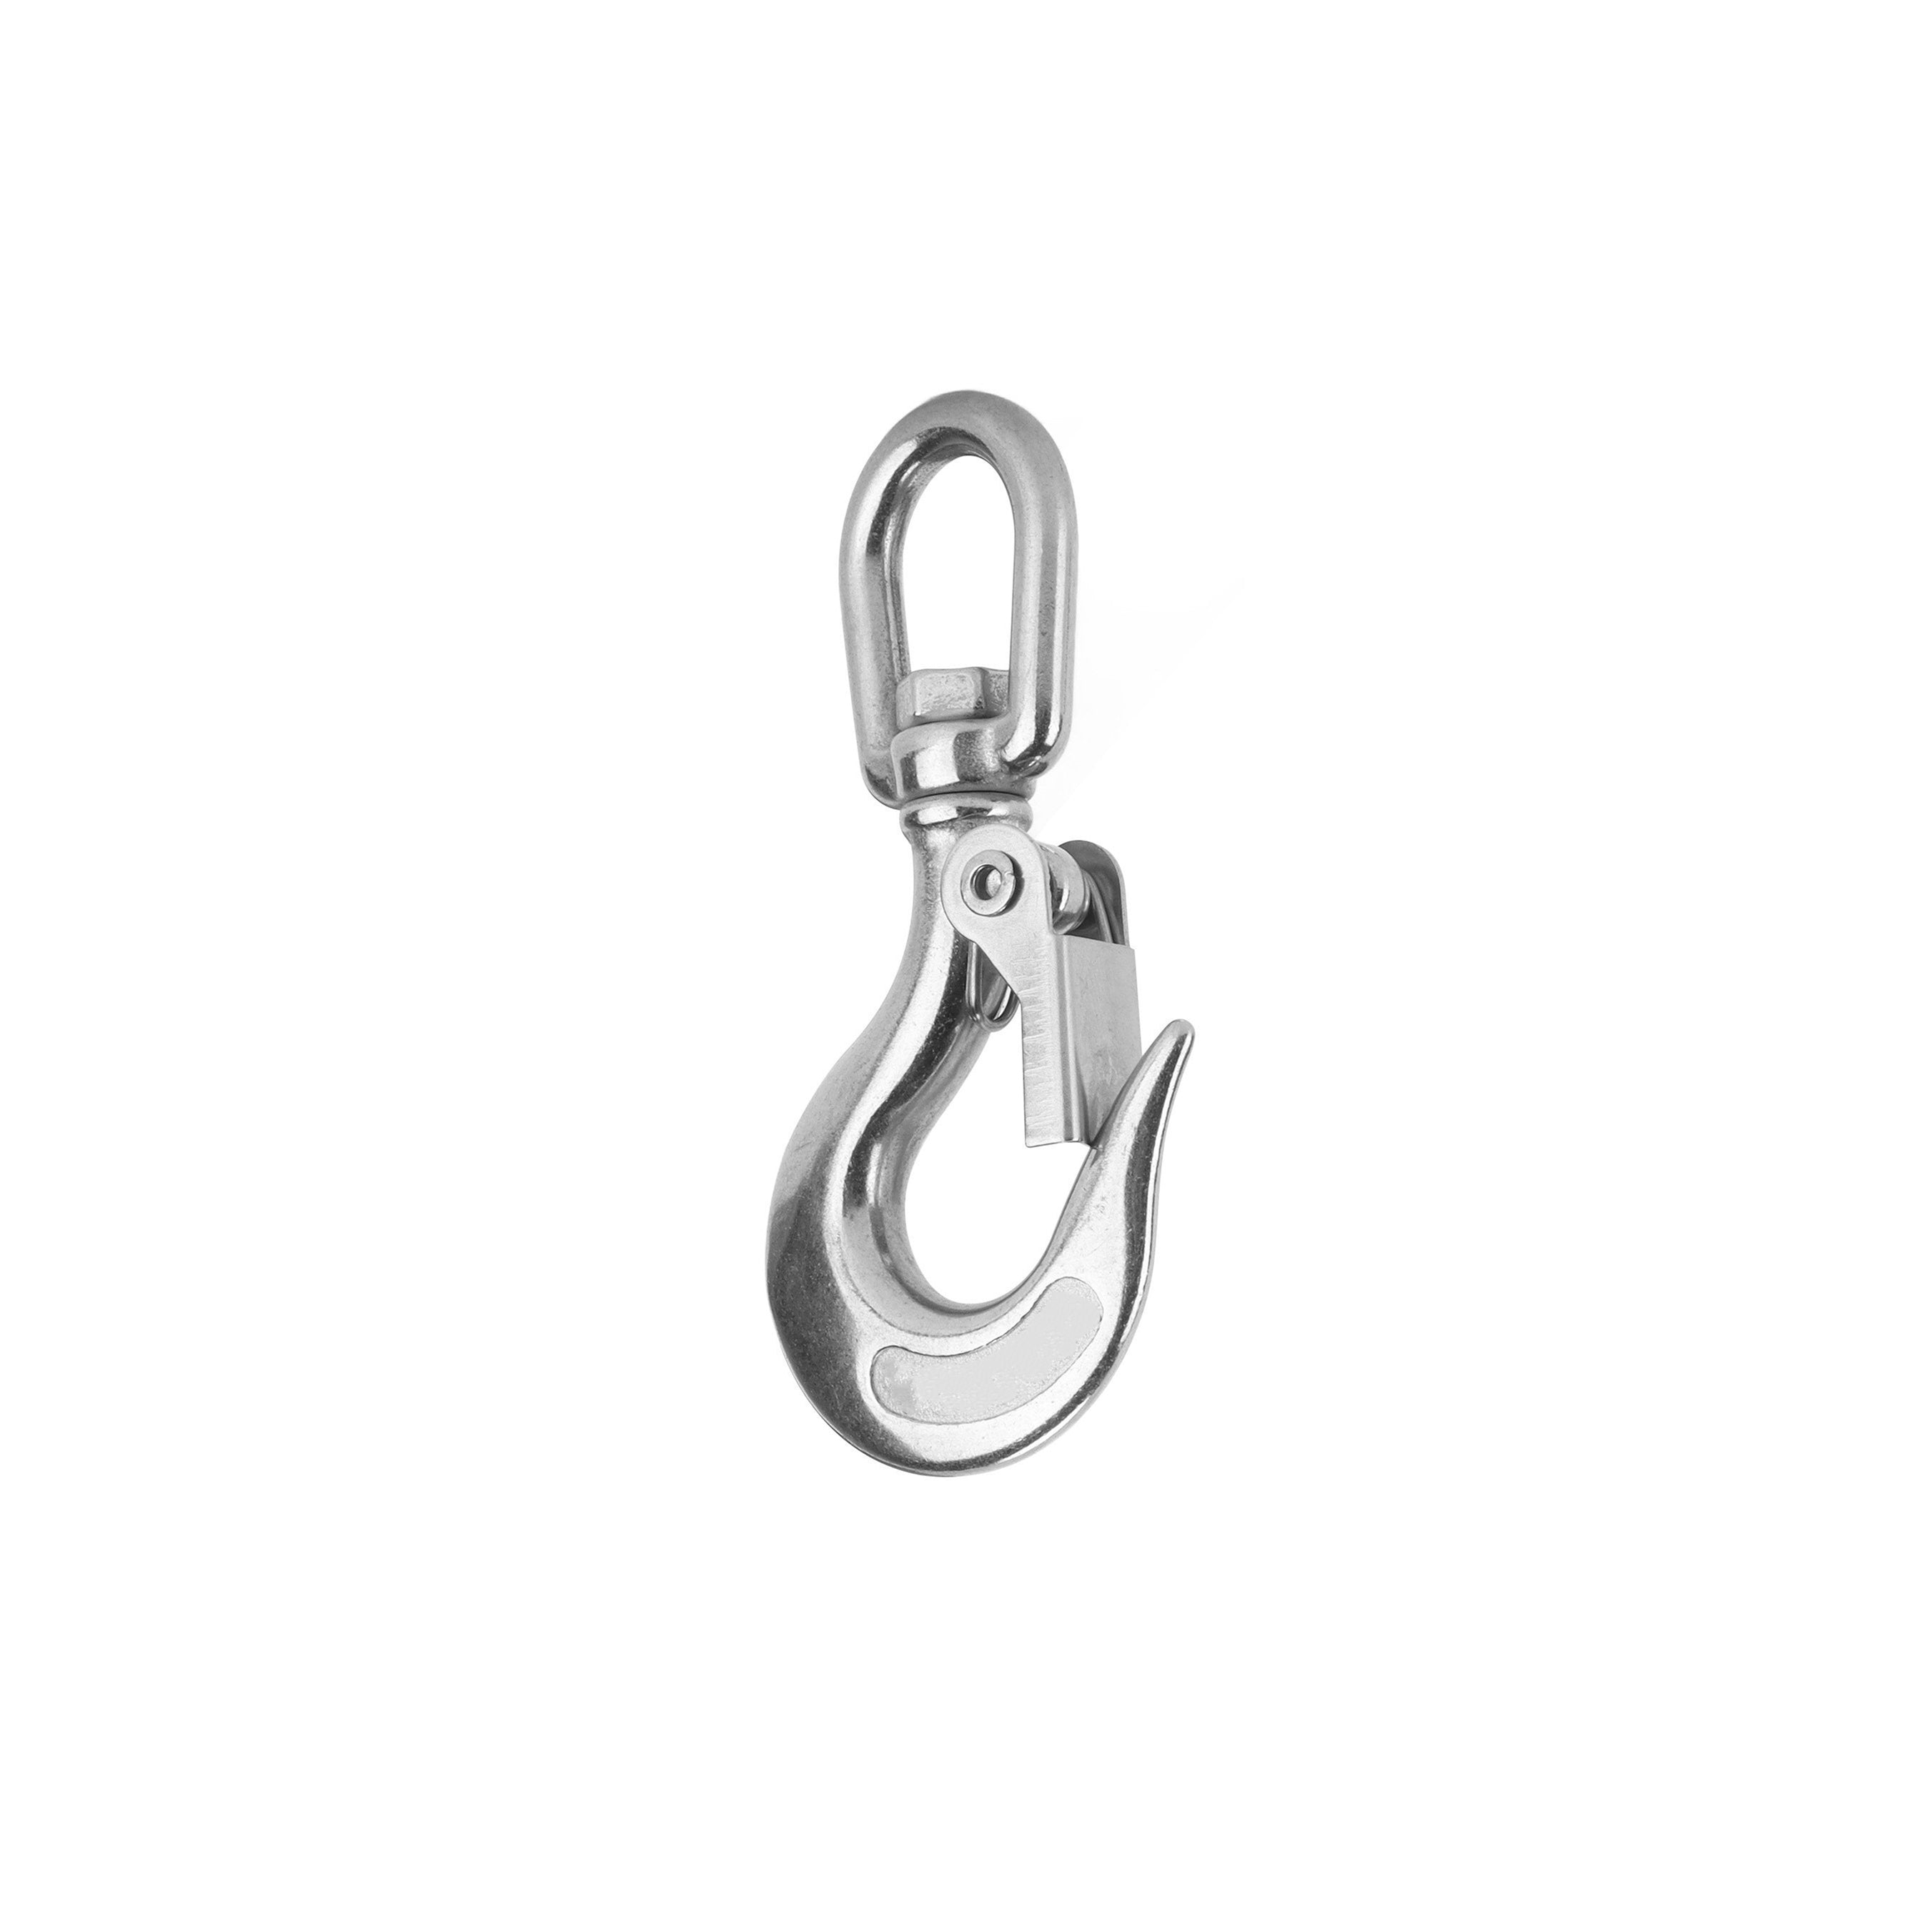  JY-MARINE Swivel Eye Snap Hook Stainless Steel 4